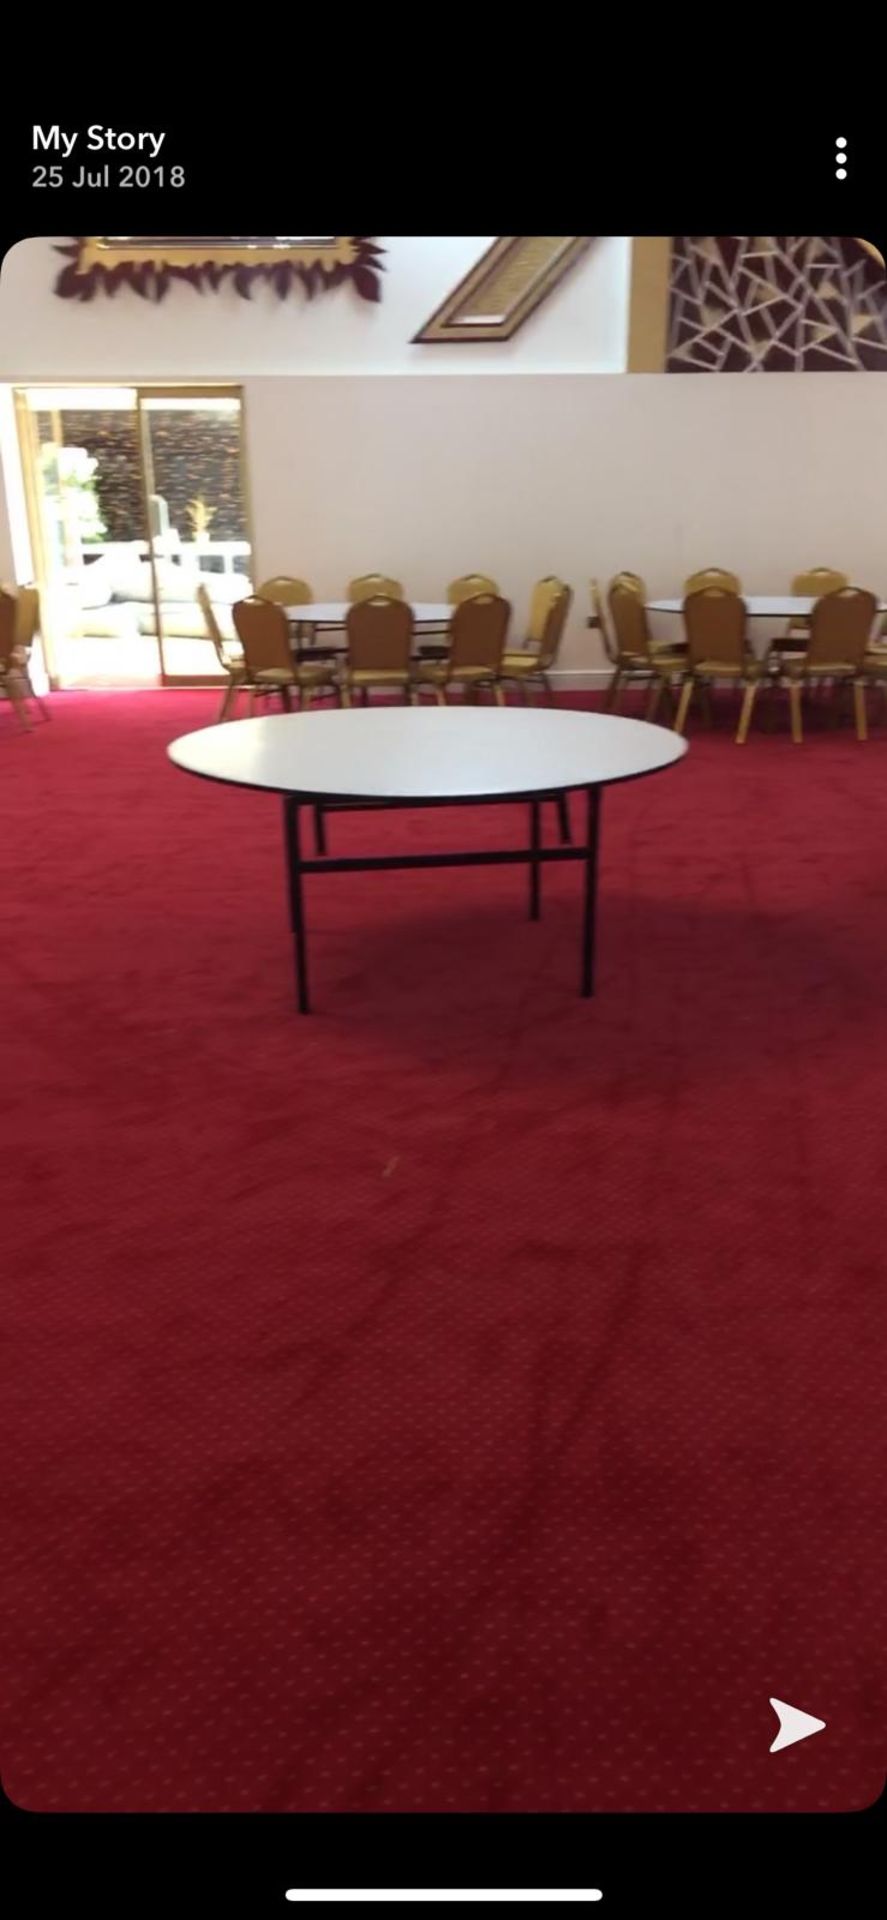 1 Roll, Red Wilton Carpet 13 metres x 4 Metres - Image 3 of 5